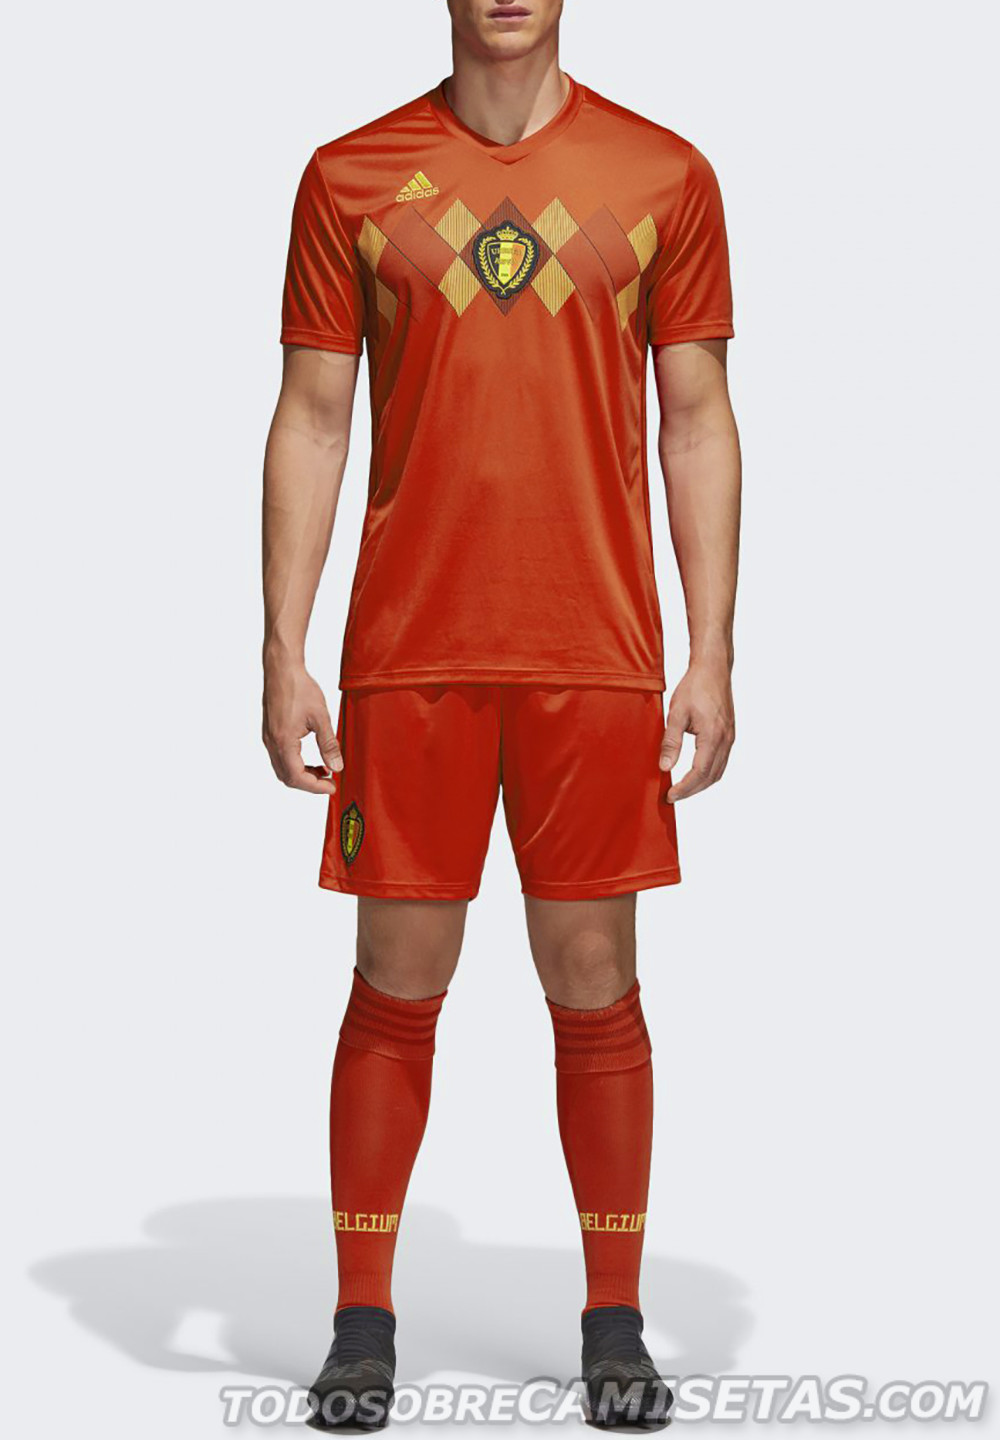 Belgium 2018 World Cup adidas Kit